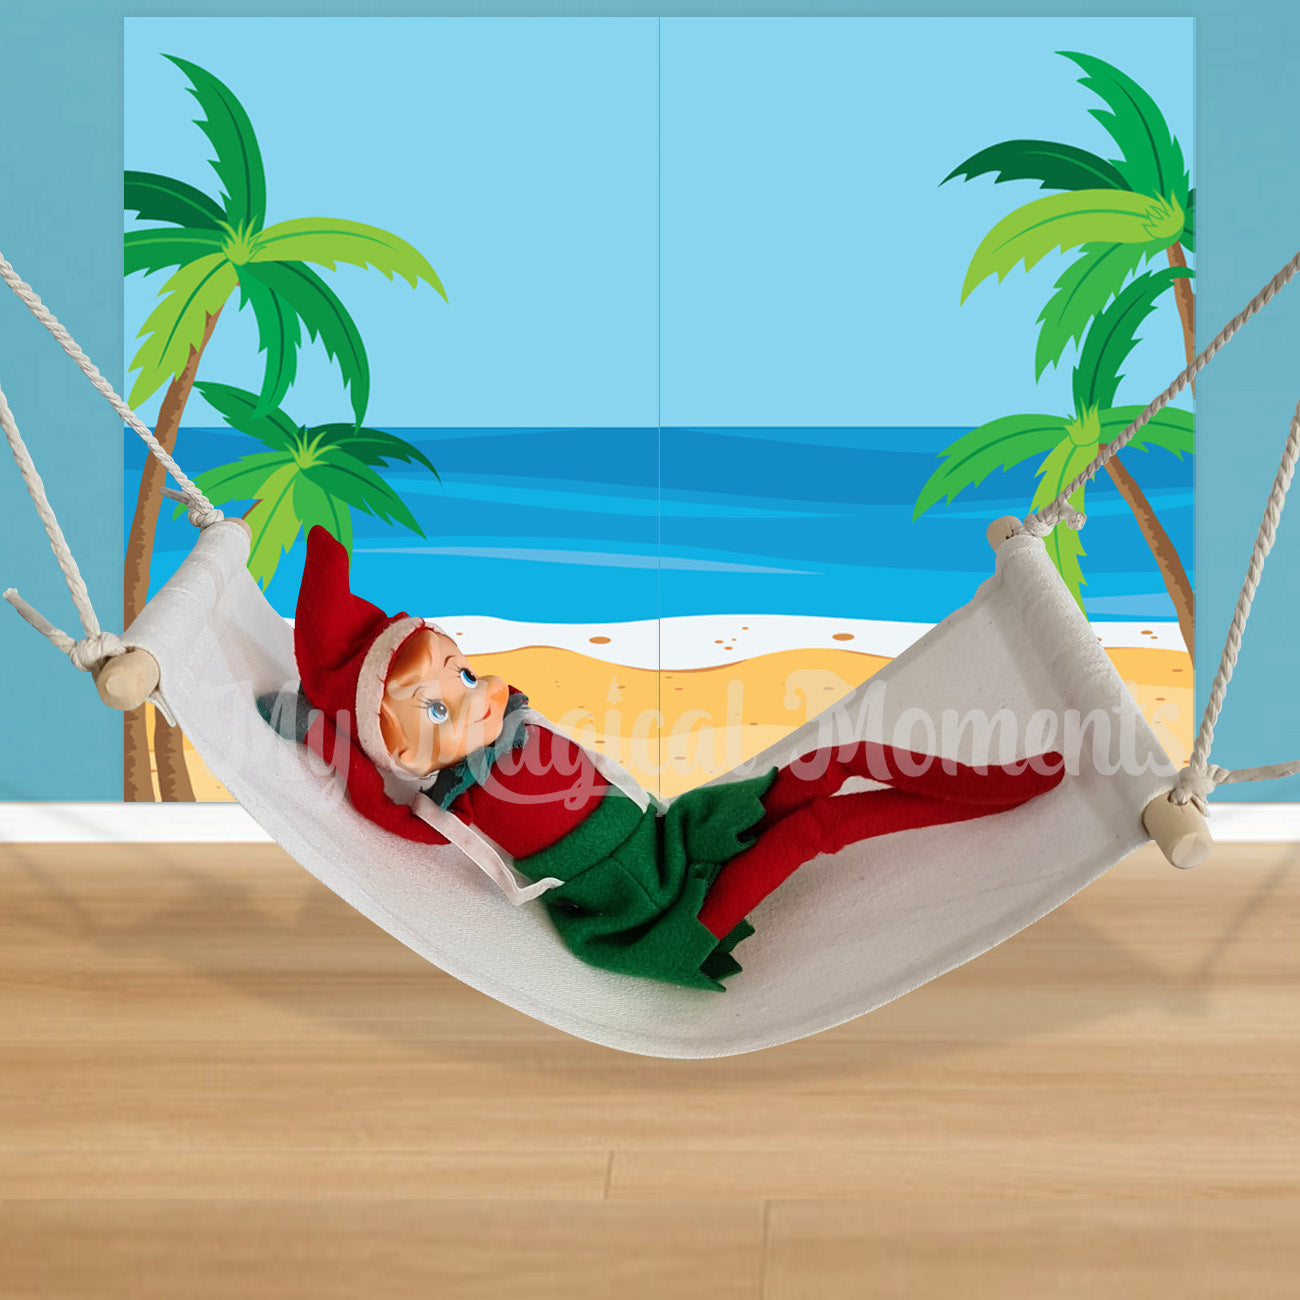 elf in a hammock prop